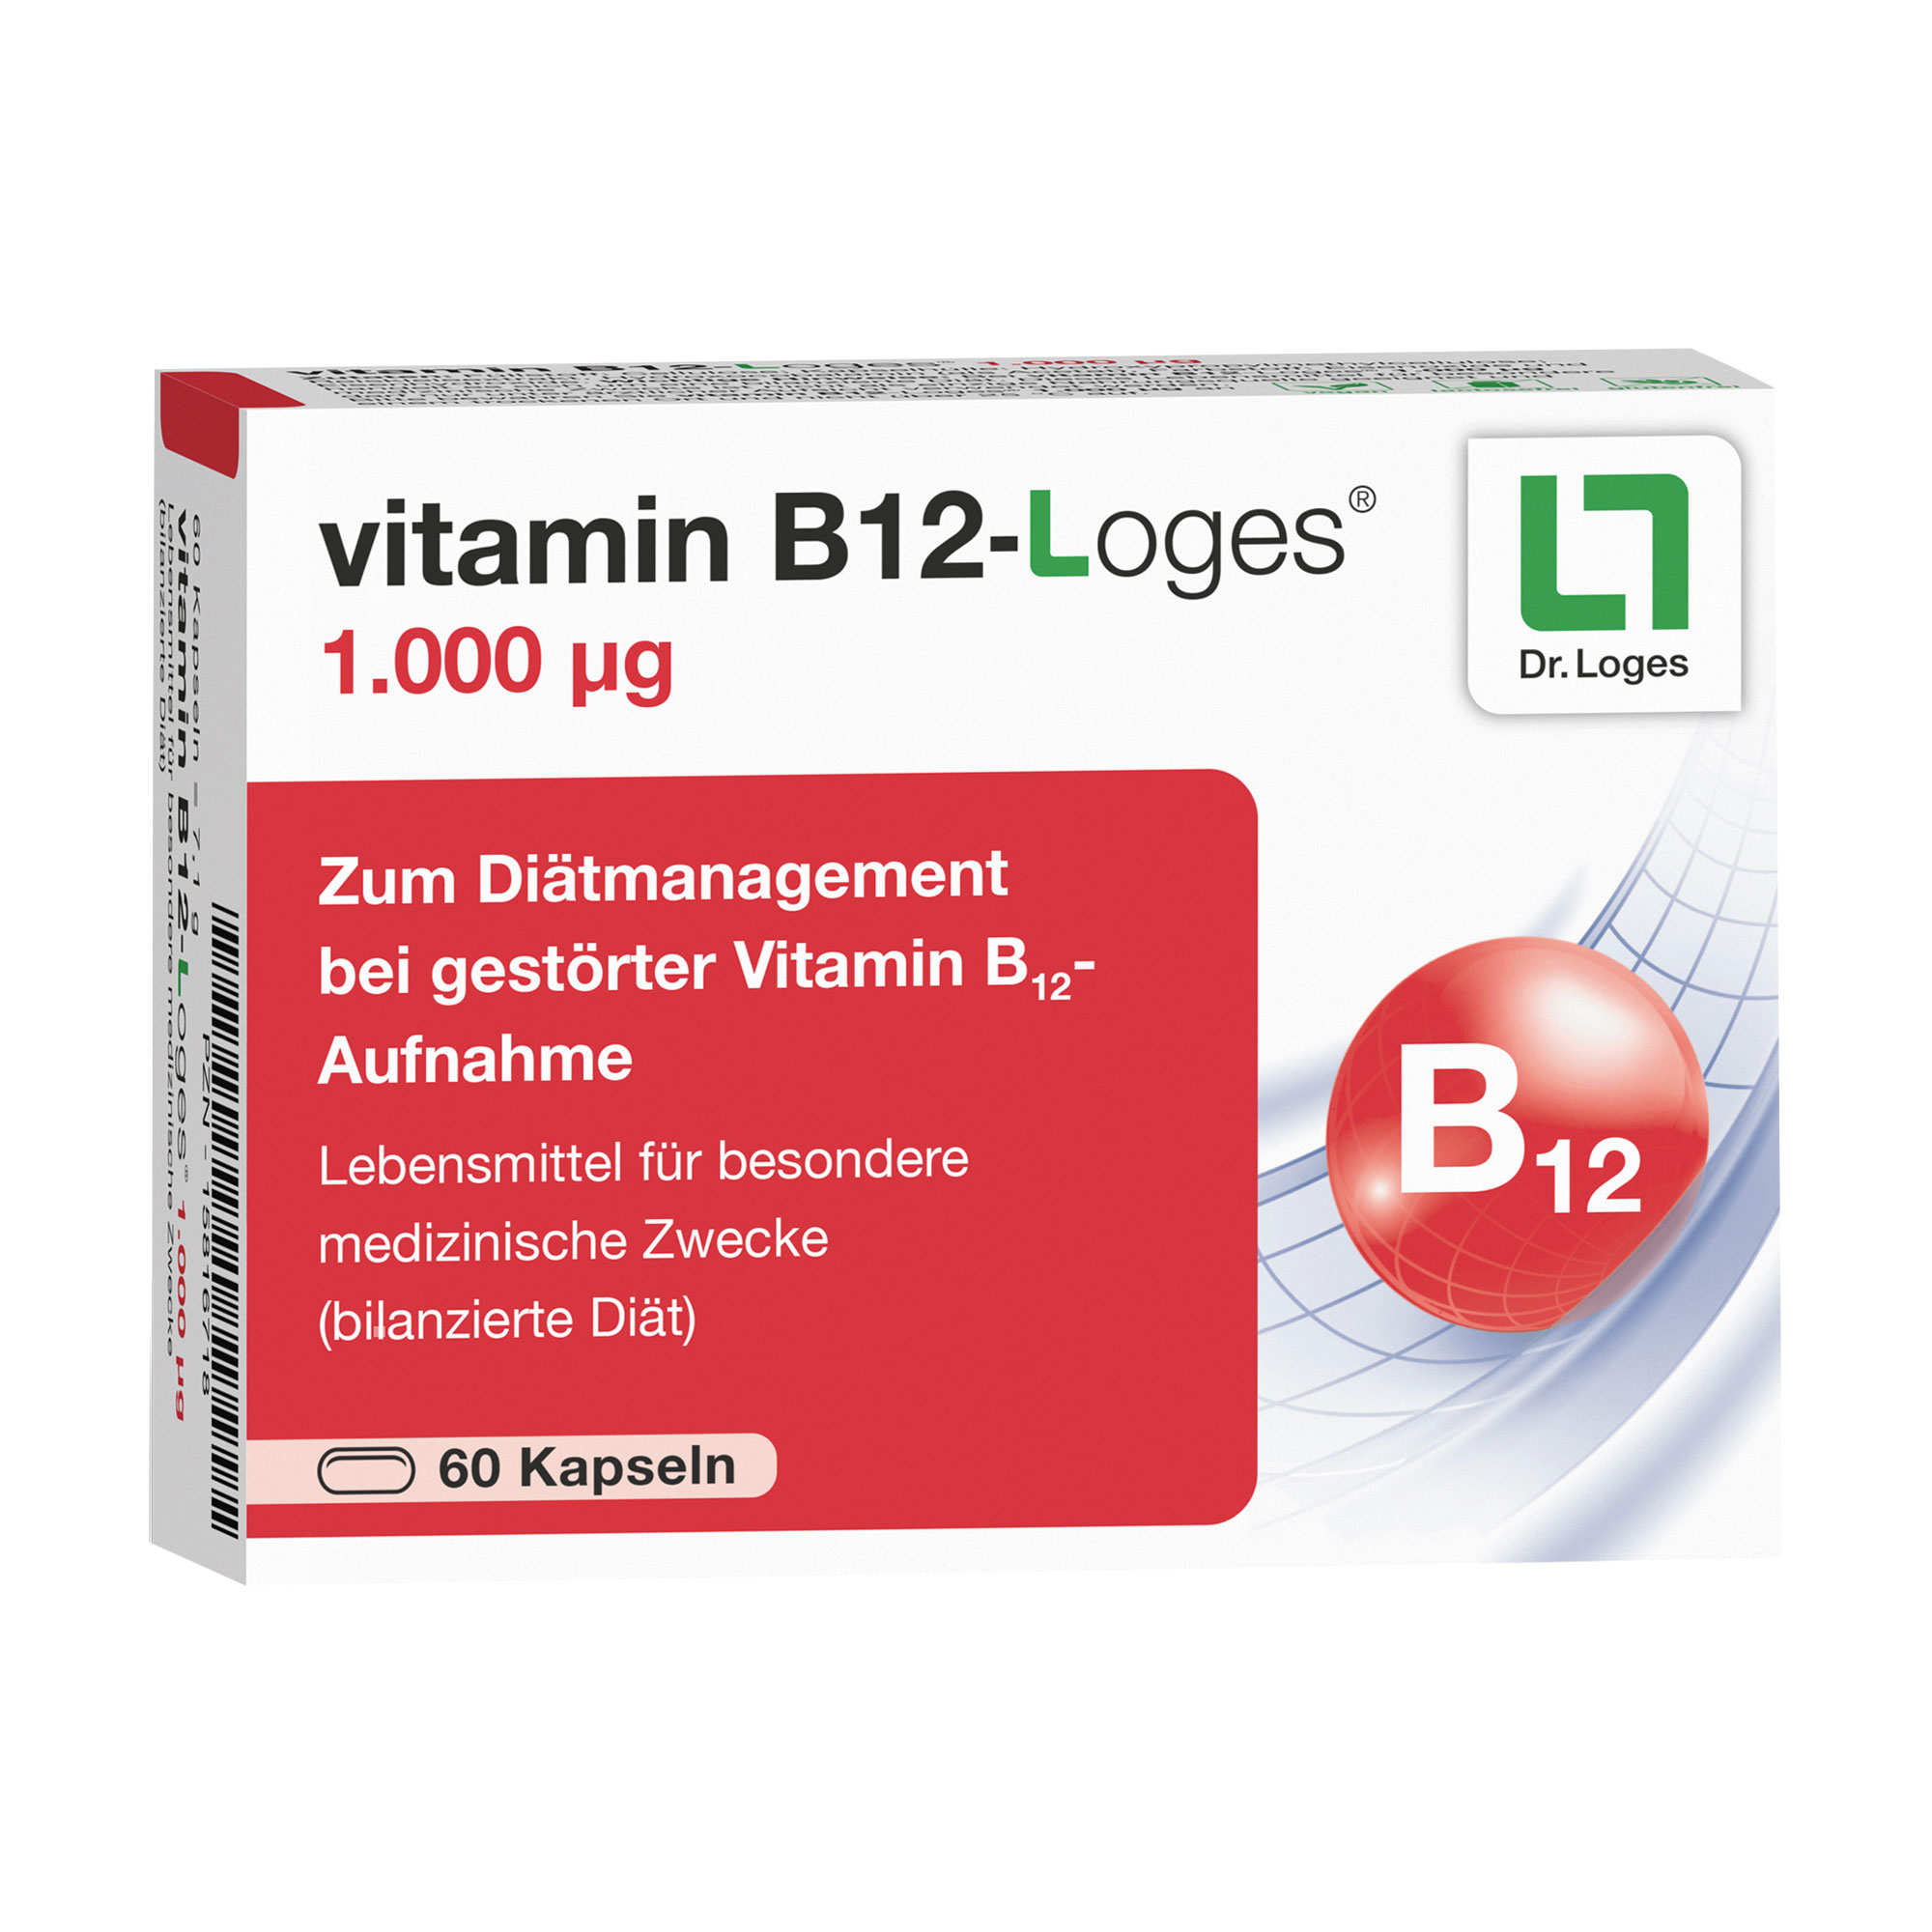 Zum Diätmanagement bei gestörter Vitamin B12-Aufnahme.